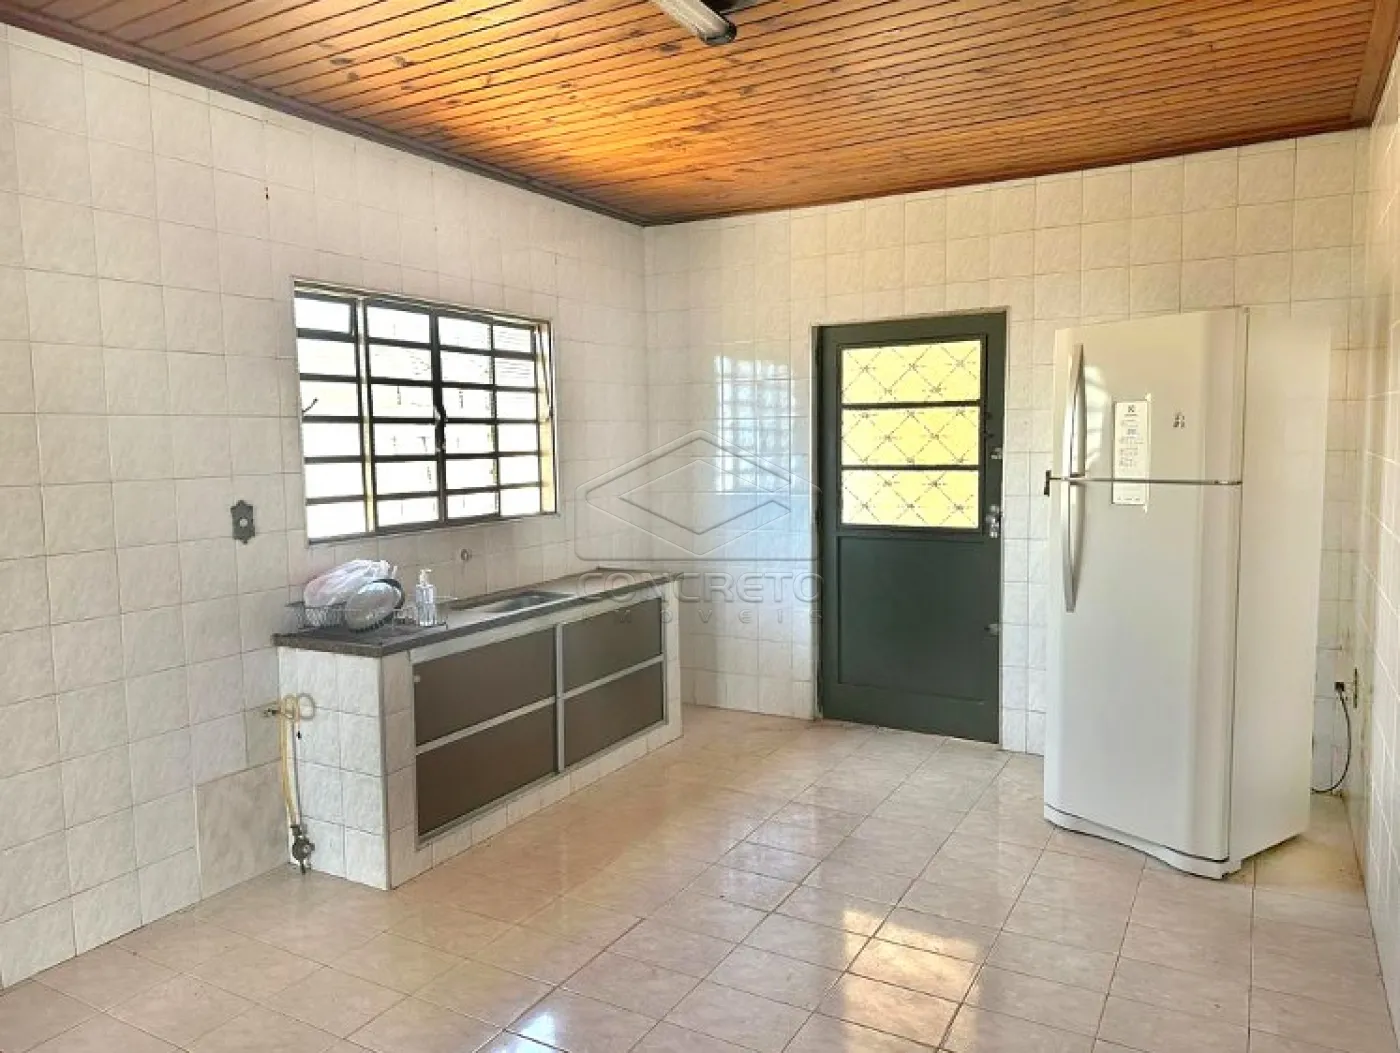 Comprar Casa / Padrão em Lençóis Paulista R$ 260.000,00 - Foto 3